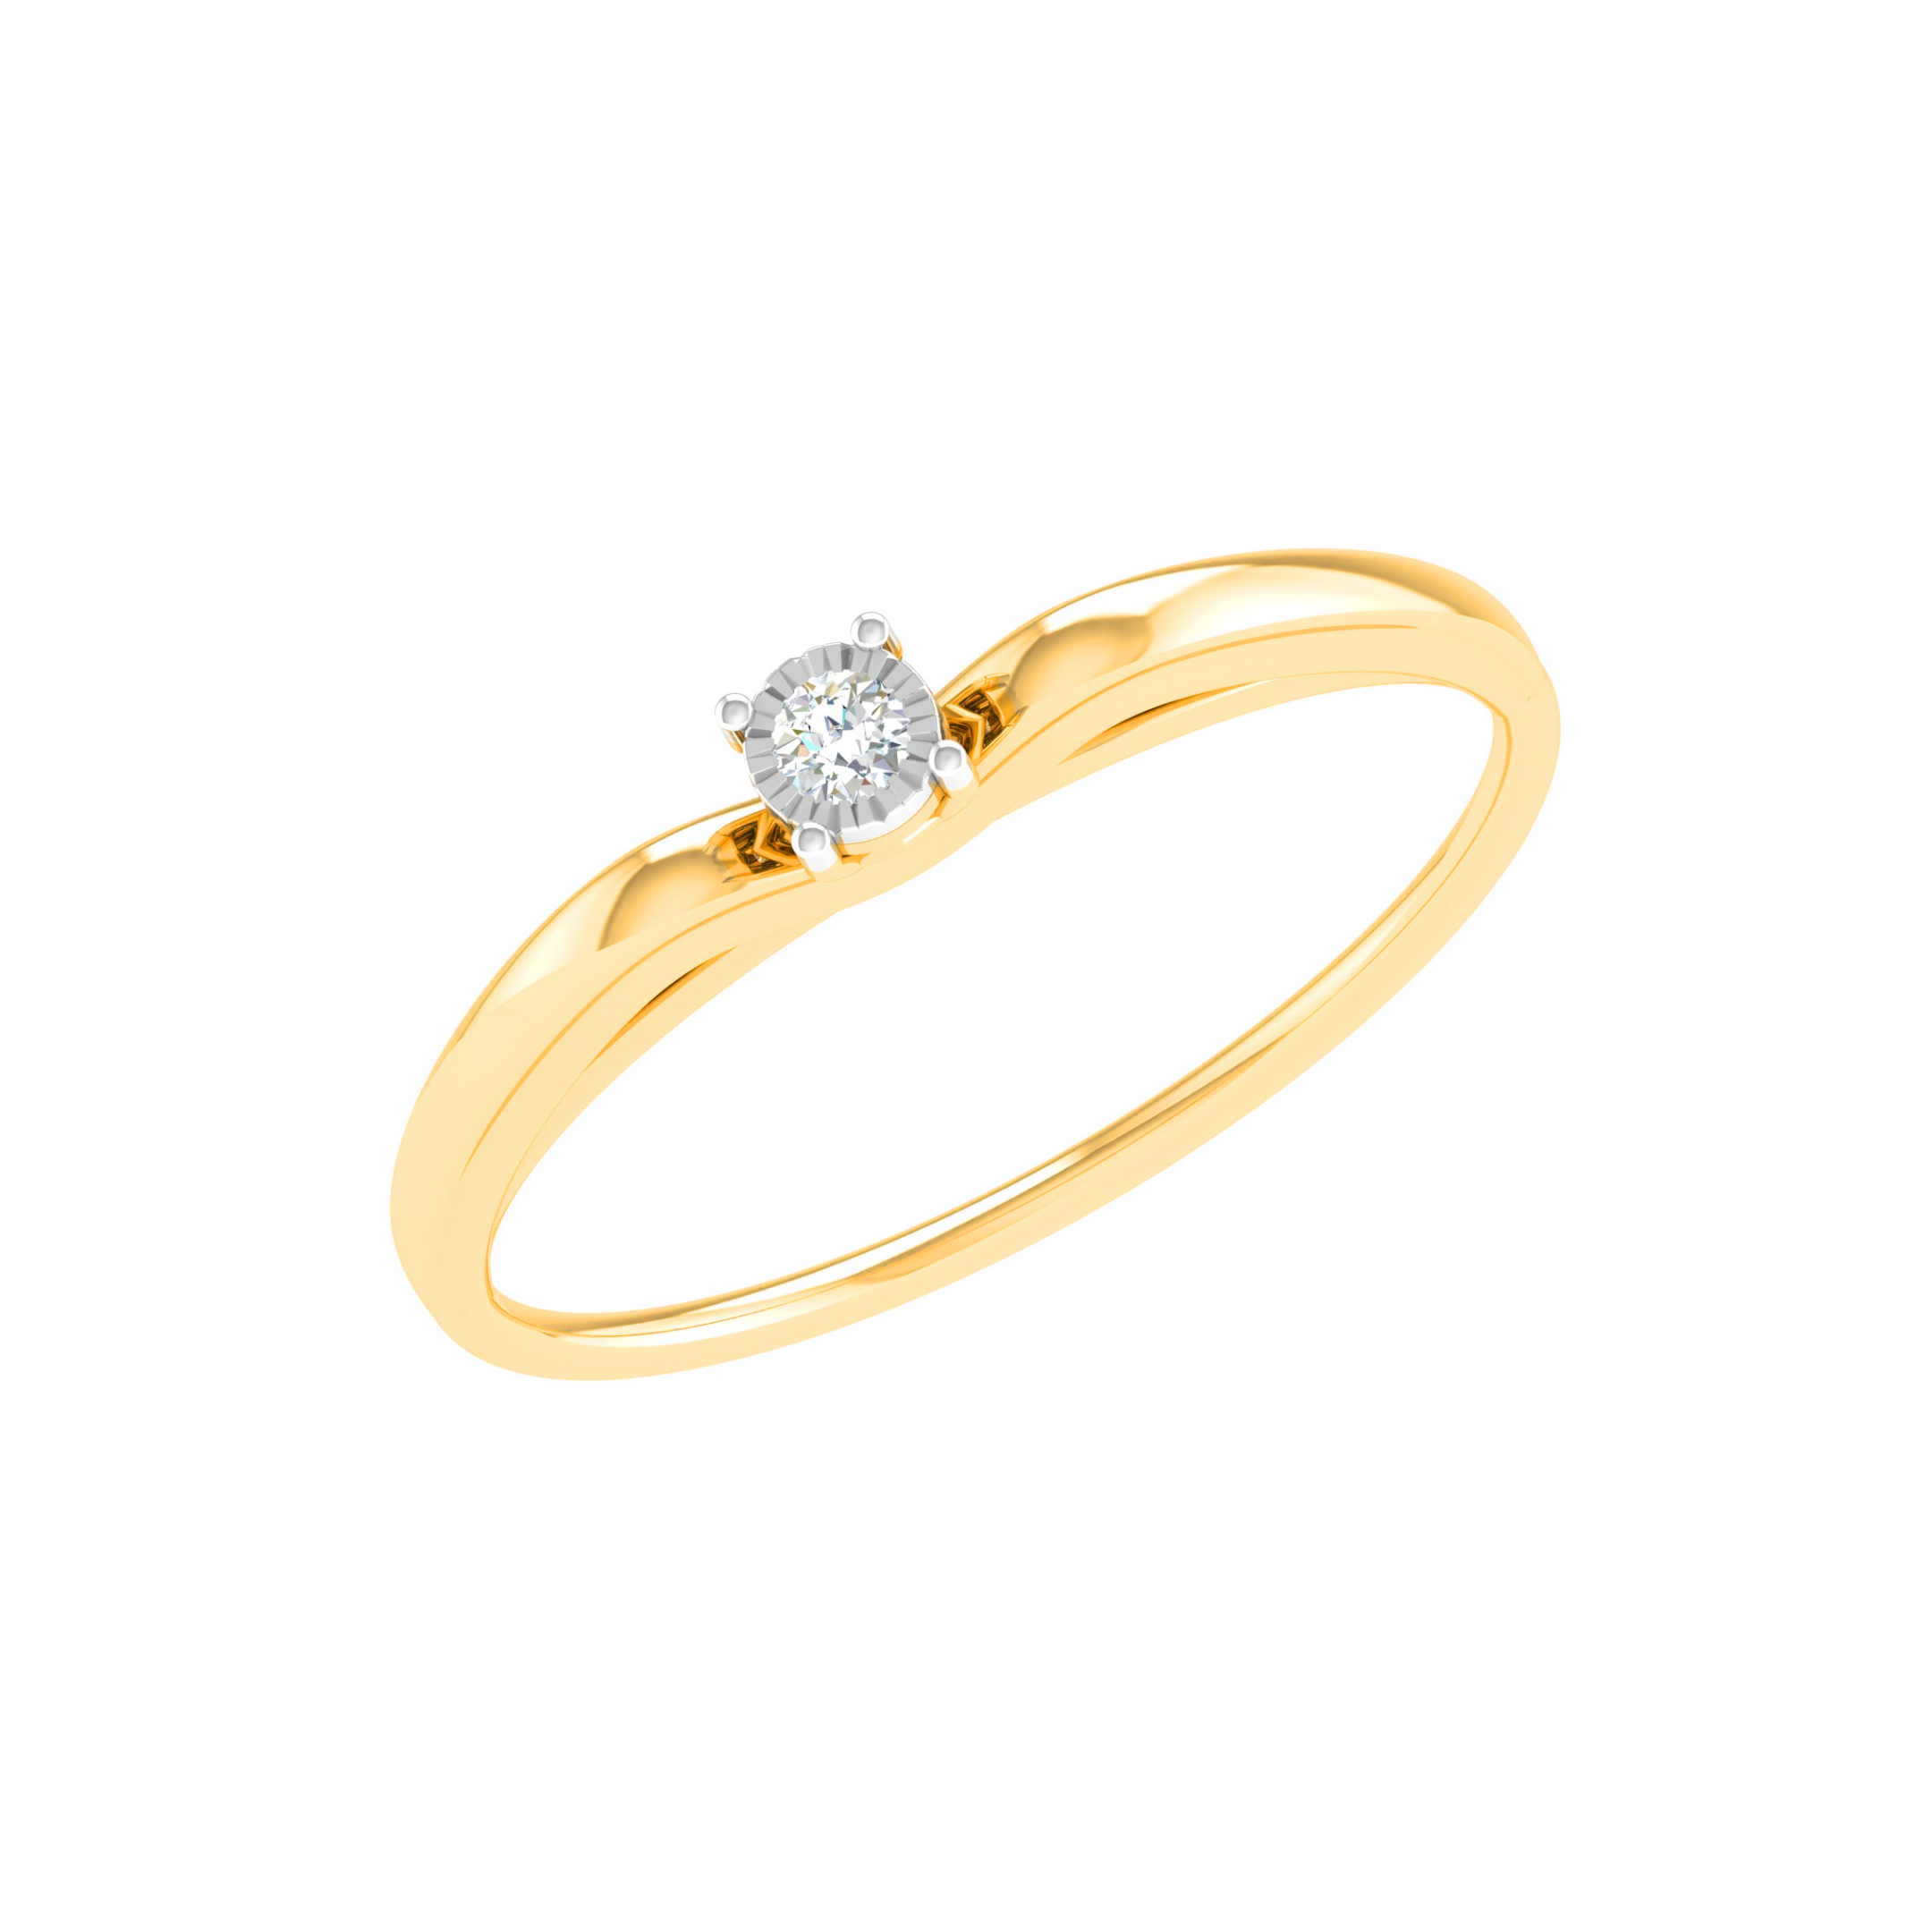 Princess Solitaire Diamond Ring